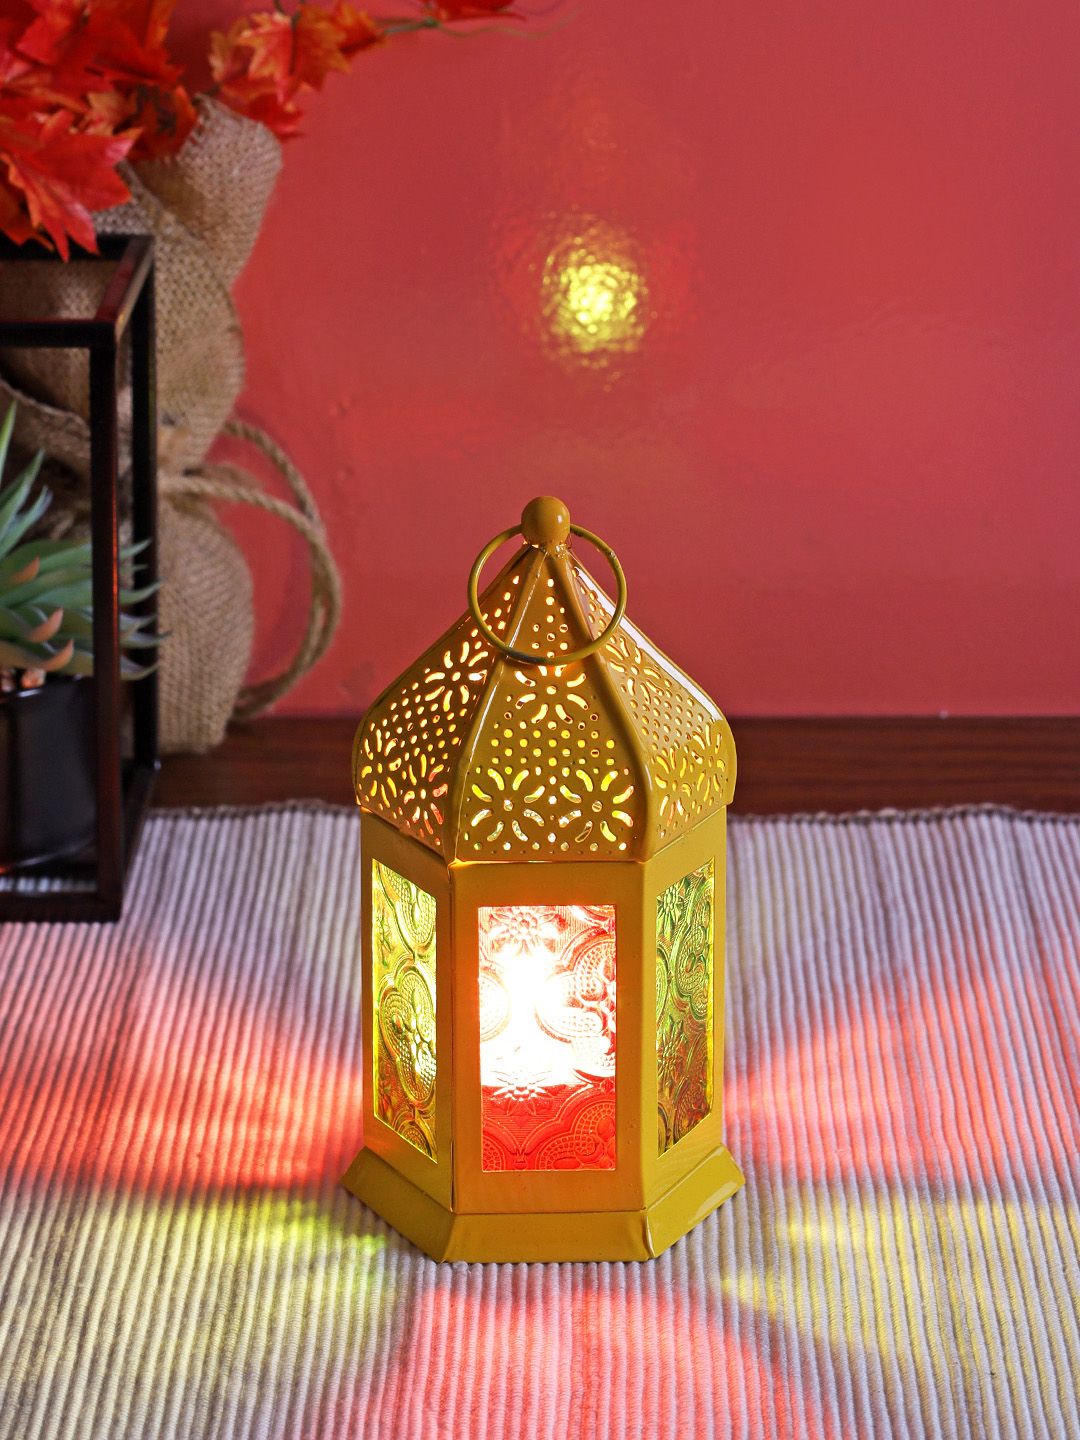 TAYHAA Yellow Morrocan Table Lantern Price in India